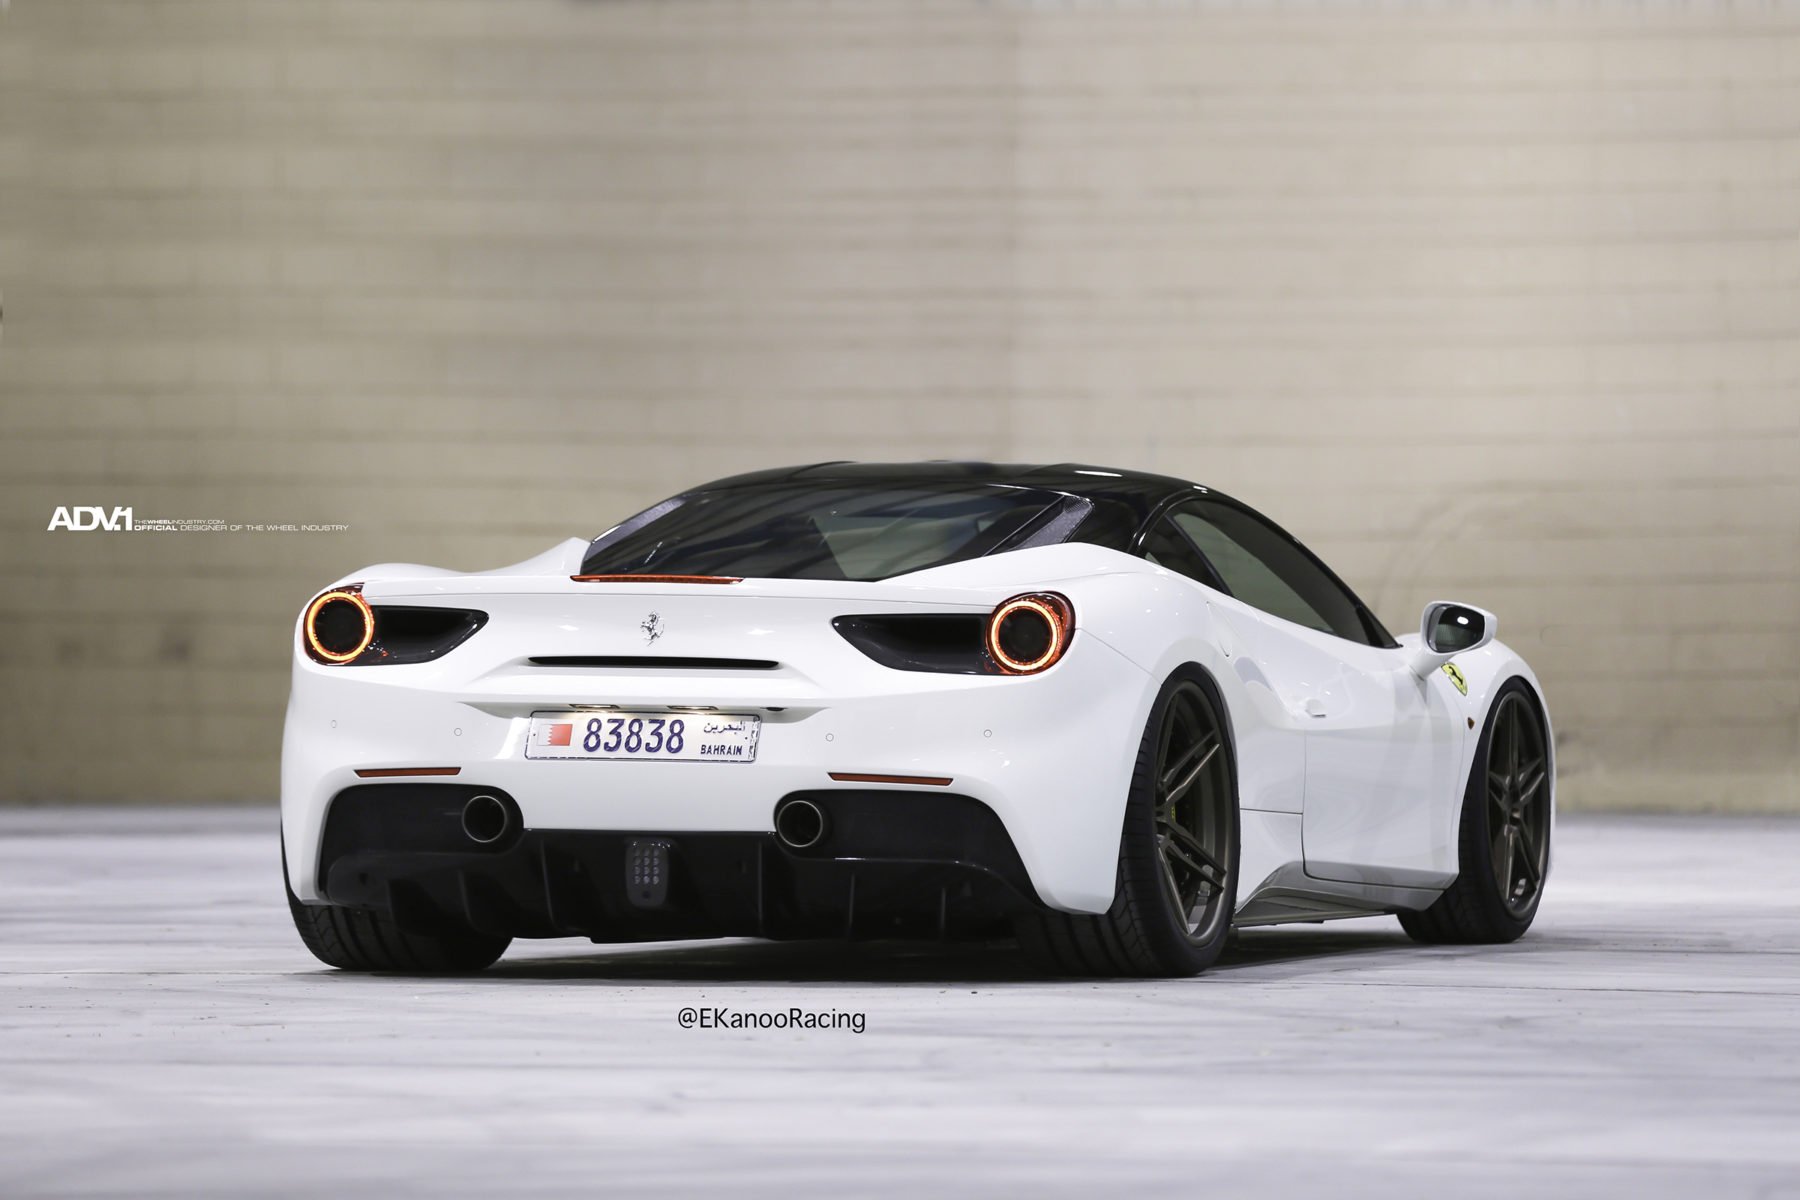 white, Ferrari, 488, Gtb, Adv1, Forged, Wheels, Cars Wallpaper